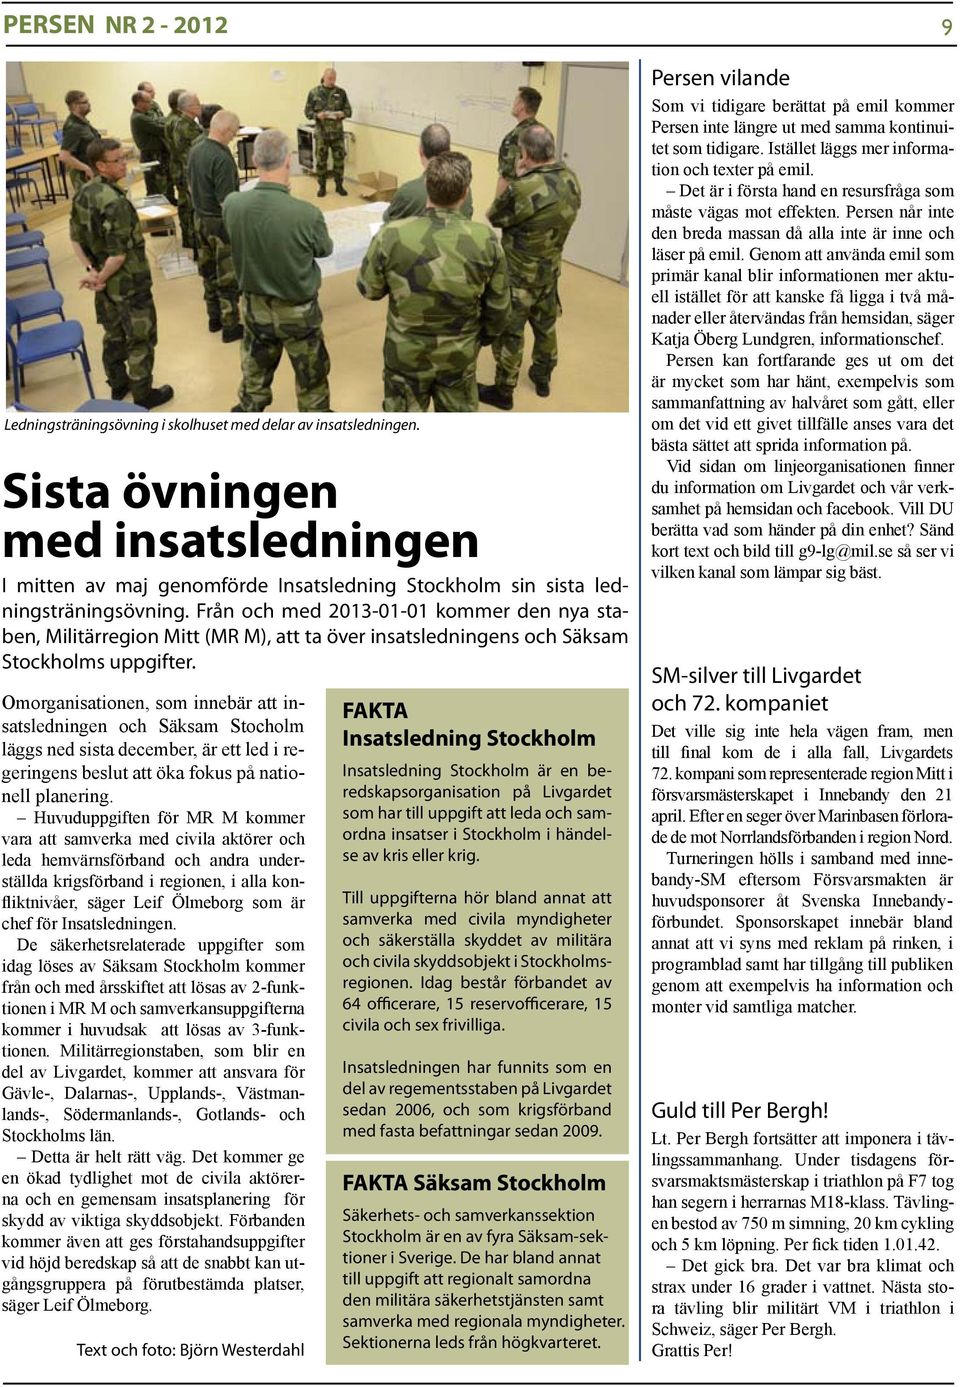 Från och med 2013-01-01 kommer den nya staben, Militärregion Mitt (MR M), att ta över insatsledningens och Säksam Stockholms uppgifter.